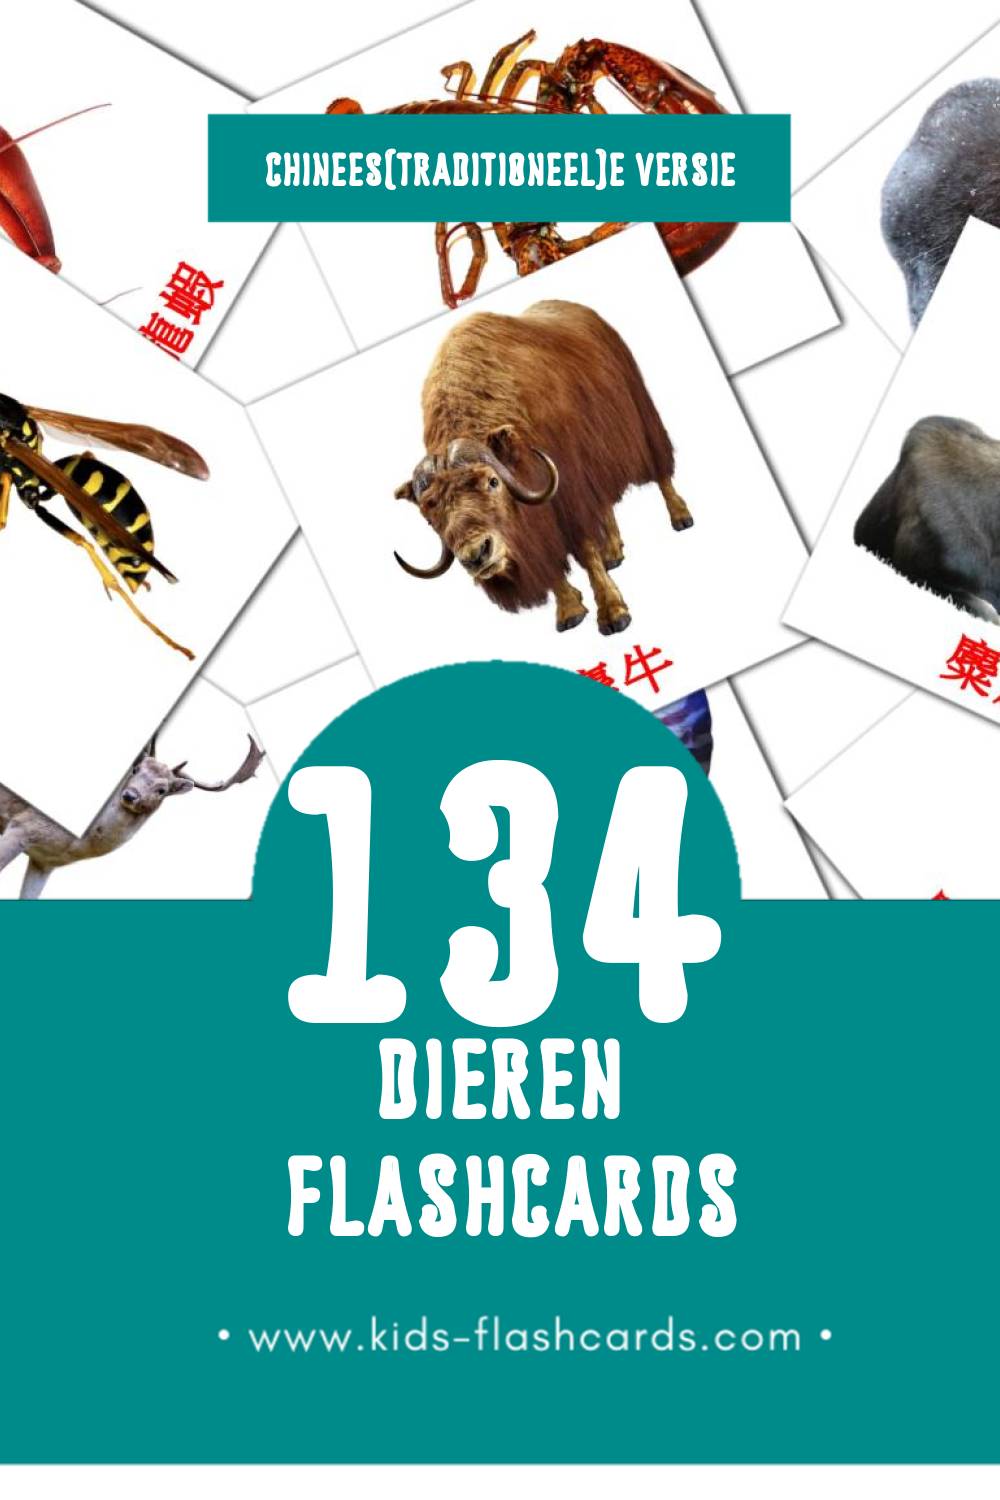 Visuele 叢林動物 Flashcards voor Kleuters (134 kaarten in het Chinees(traditioneel))